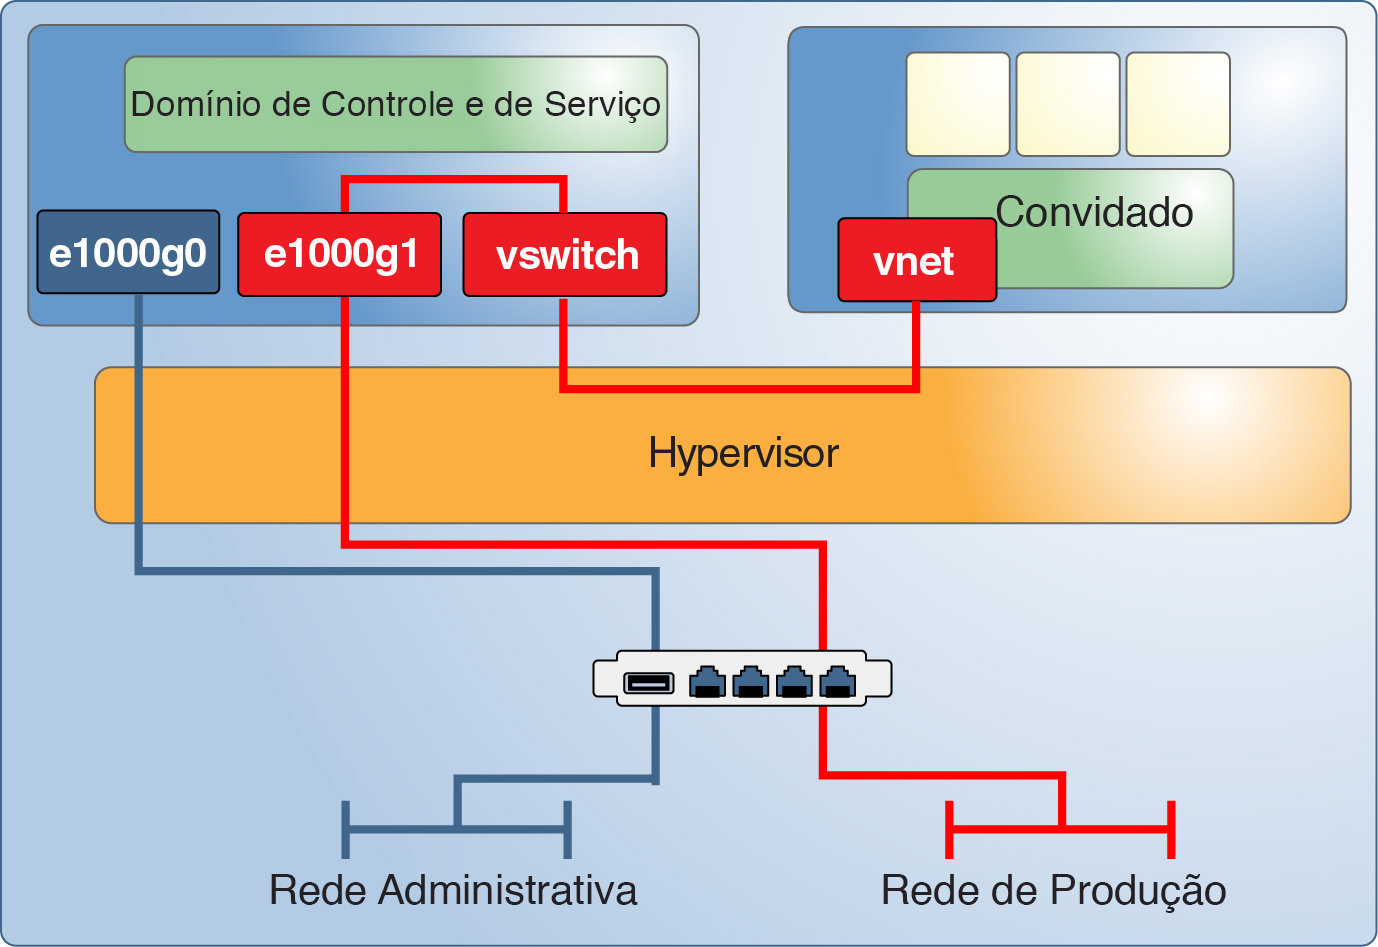 image:O gráfico mostra como as interfaces de rede distintas suportam uma rede de gerenciamento dedicada para o domínio de controle e uma rede de produção para os convidados.